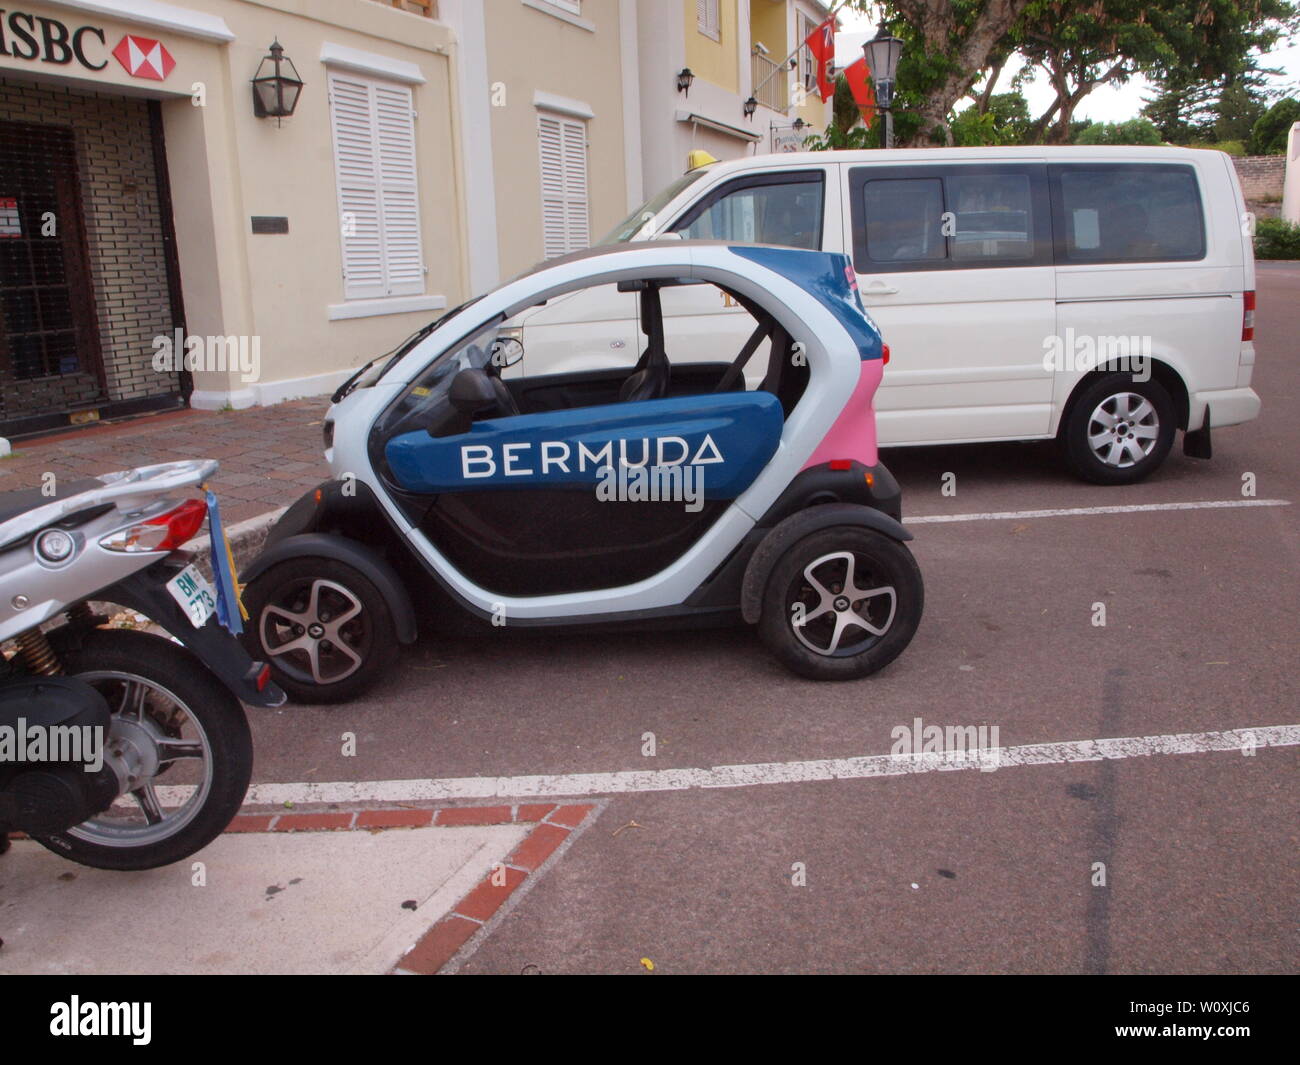 Il più recente viaggio turistico avventura in Bermuda. La Renault Twizy, un veicolo tutto elettrico che consente libertà e indipendenza ai tour in modo sicuro. Foto Stock